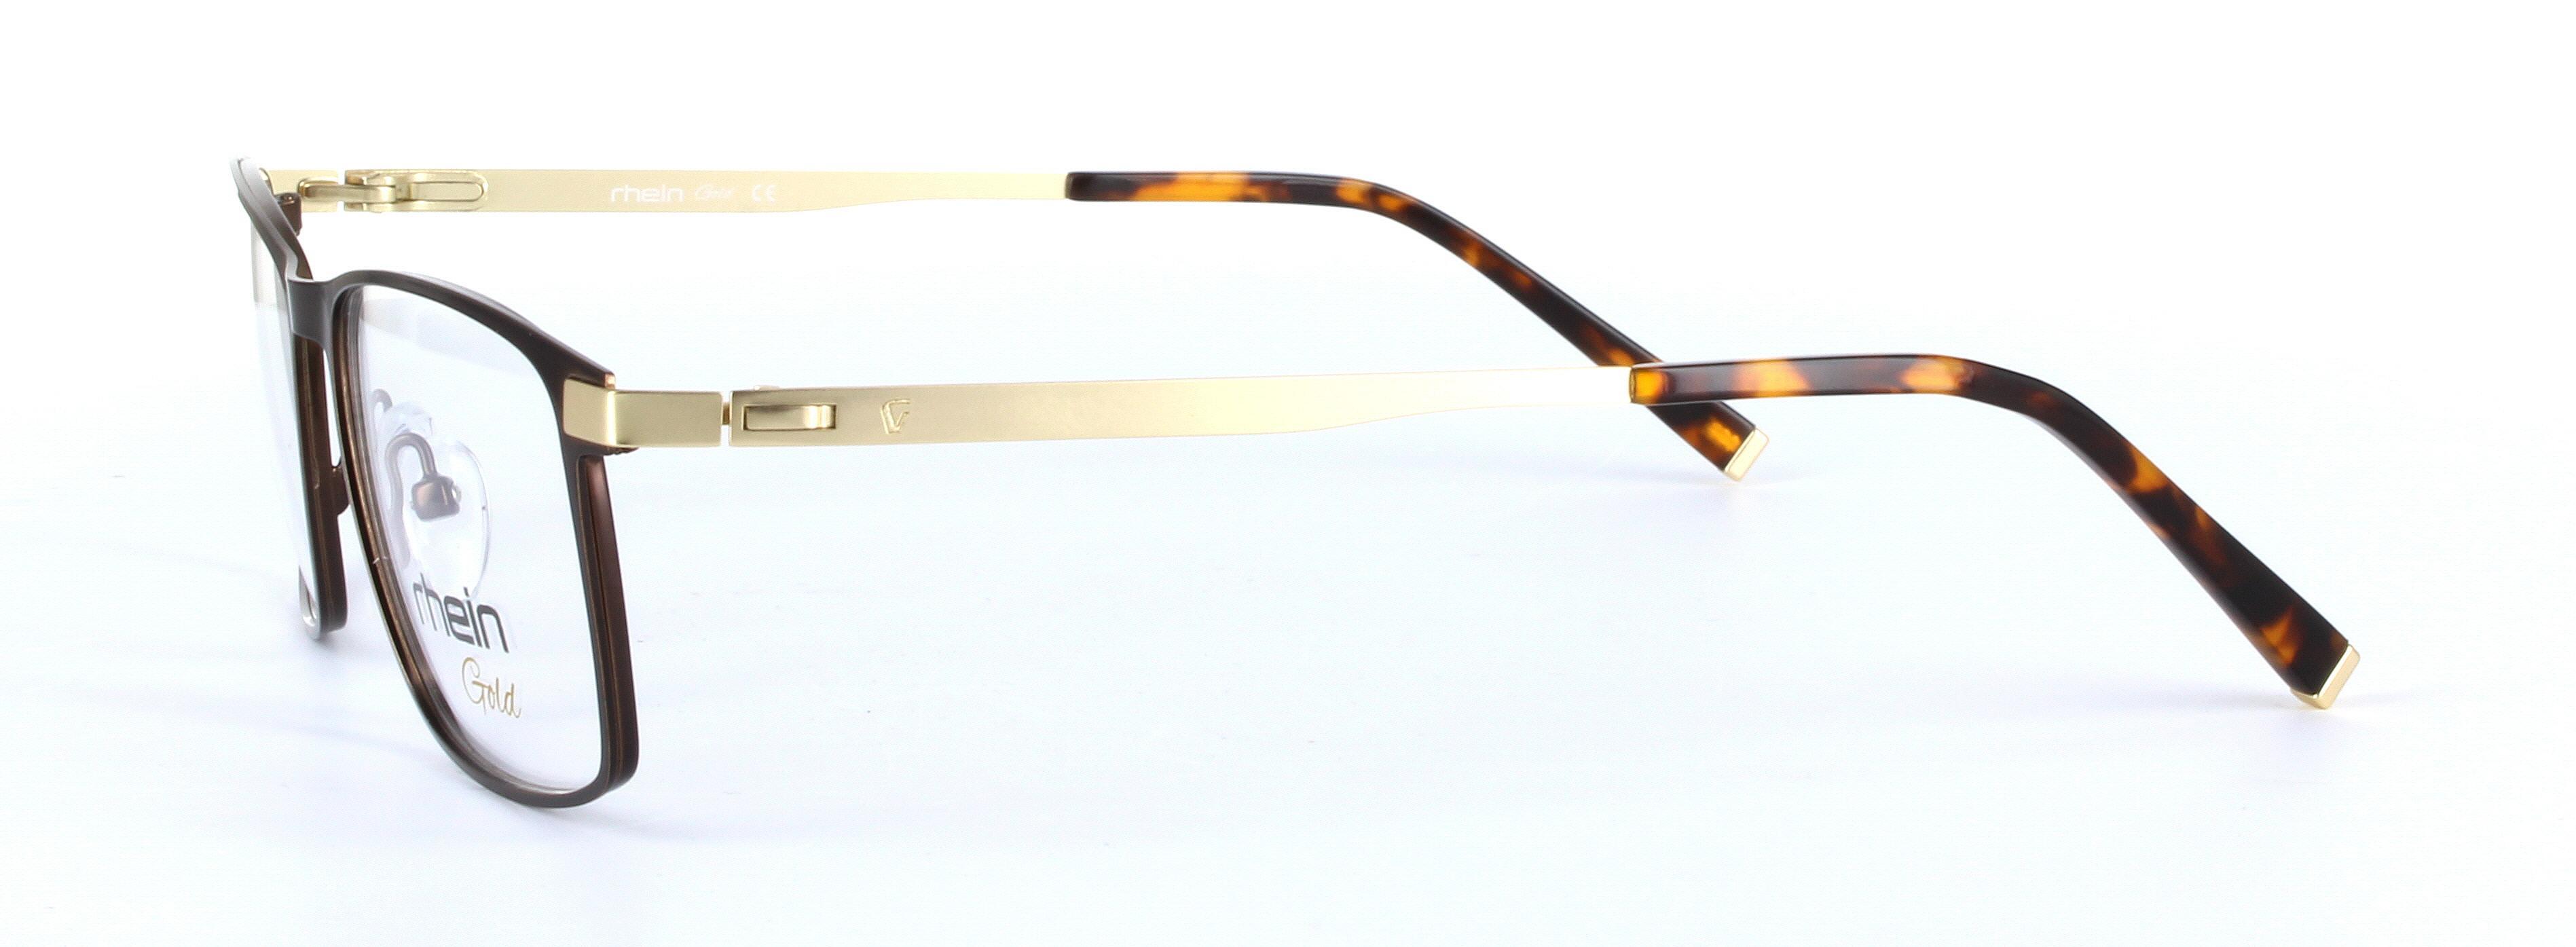 Adam Gunmetal Oval Rectangular Metal Glasses - Image View 2